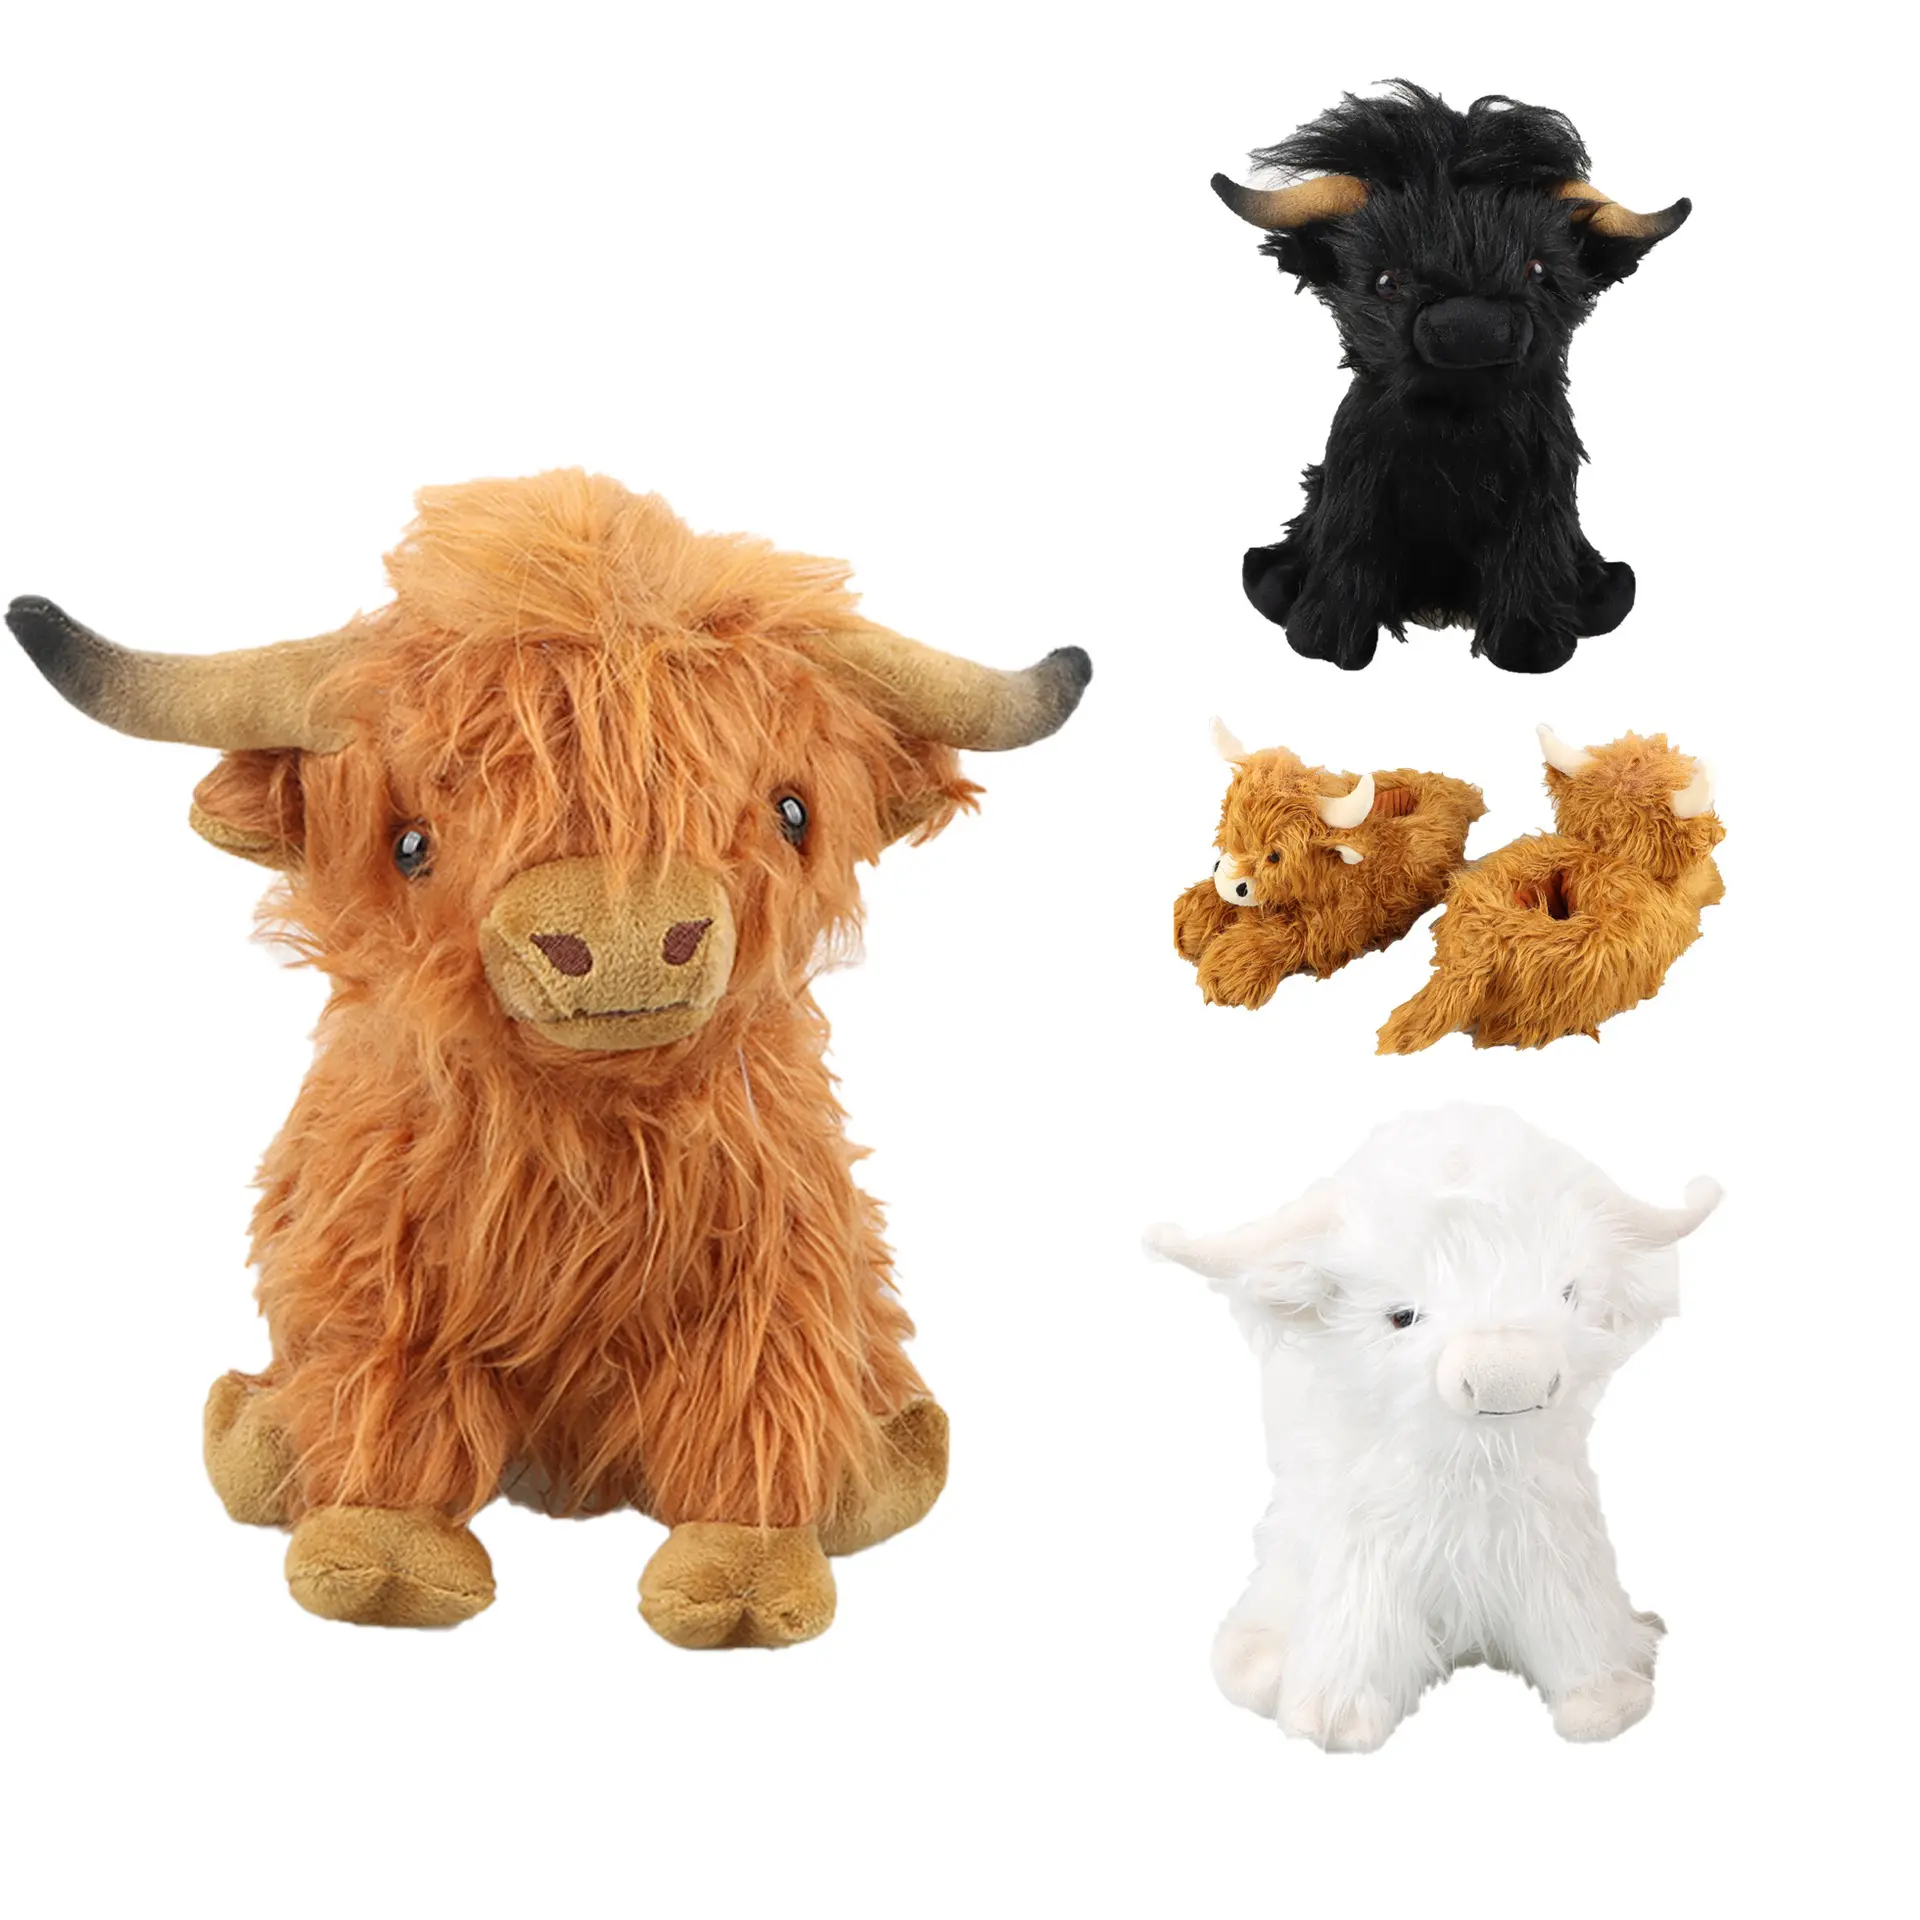 Muñeco de peluche de vaca de montaña personalizado, juguetes de peluche de Búfalo, marrón, blanco, negro, azul, vaca de montaña, muñeco de peluche de vaca